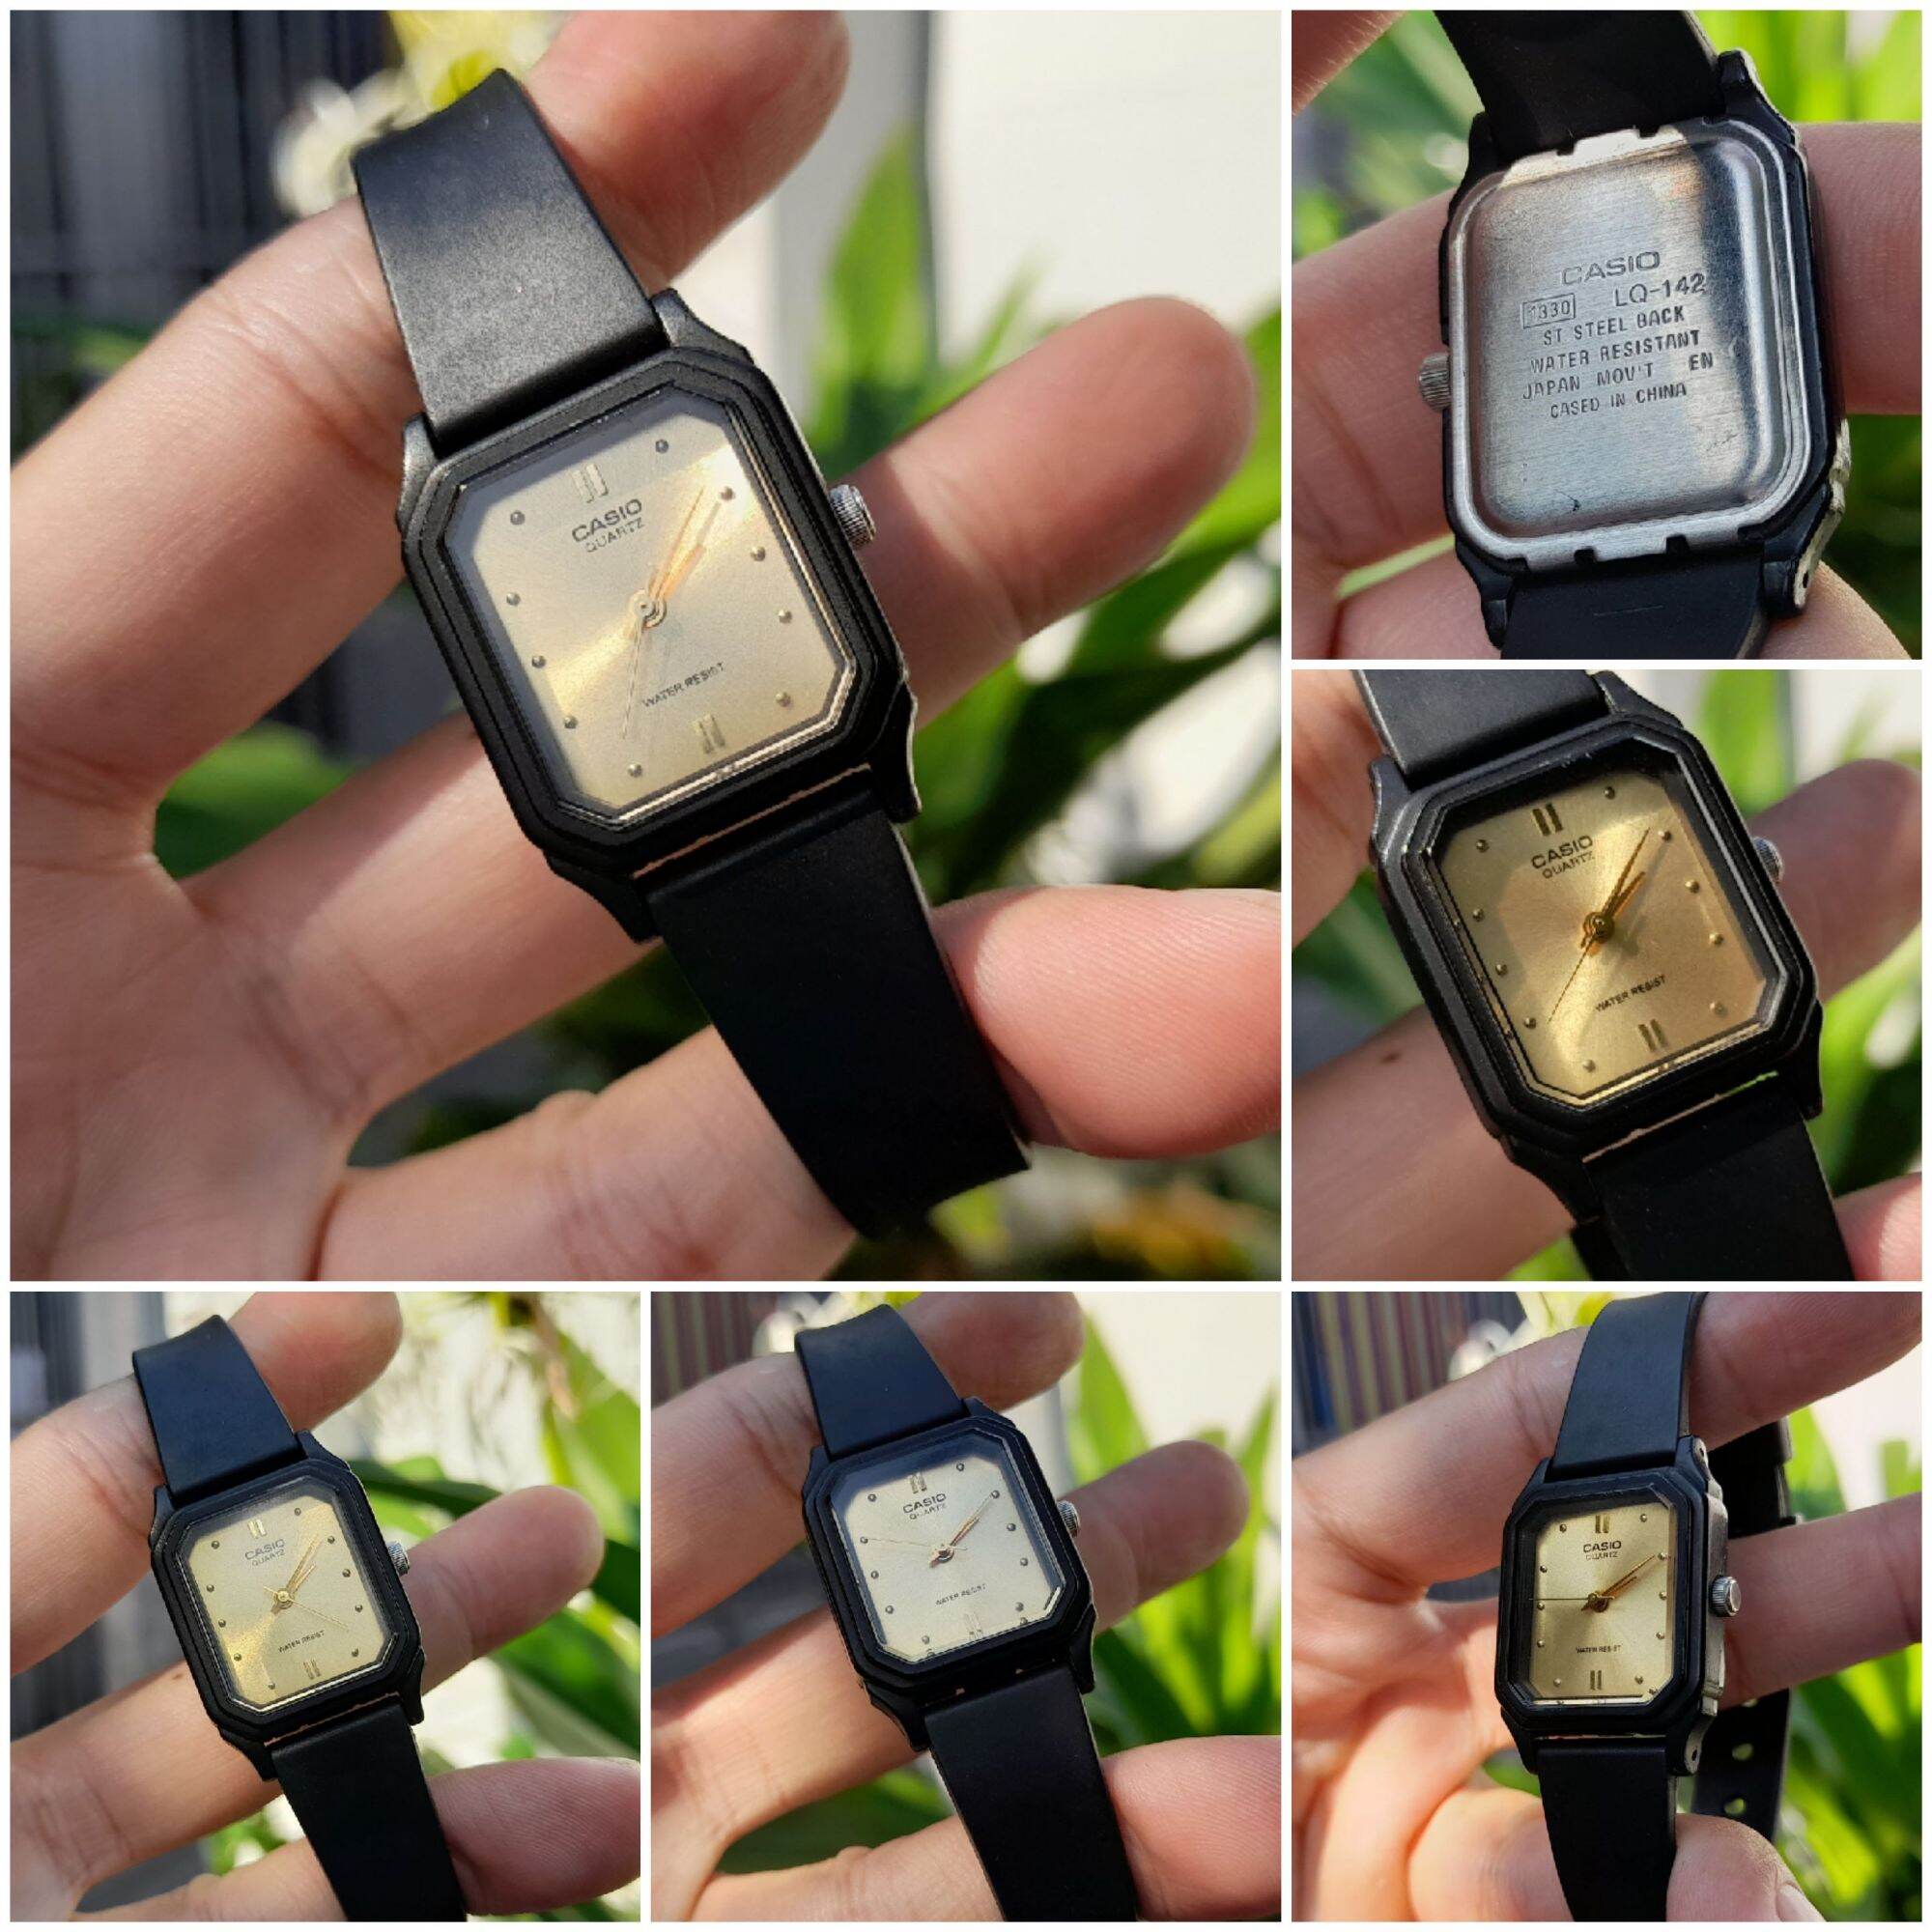 đồng hồ Casio Nữ LQ-142 mặt vàng